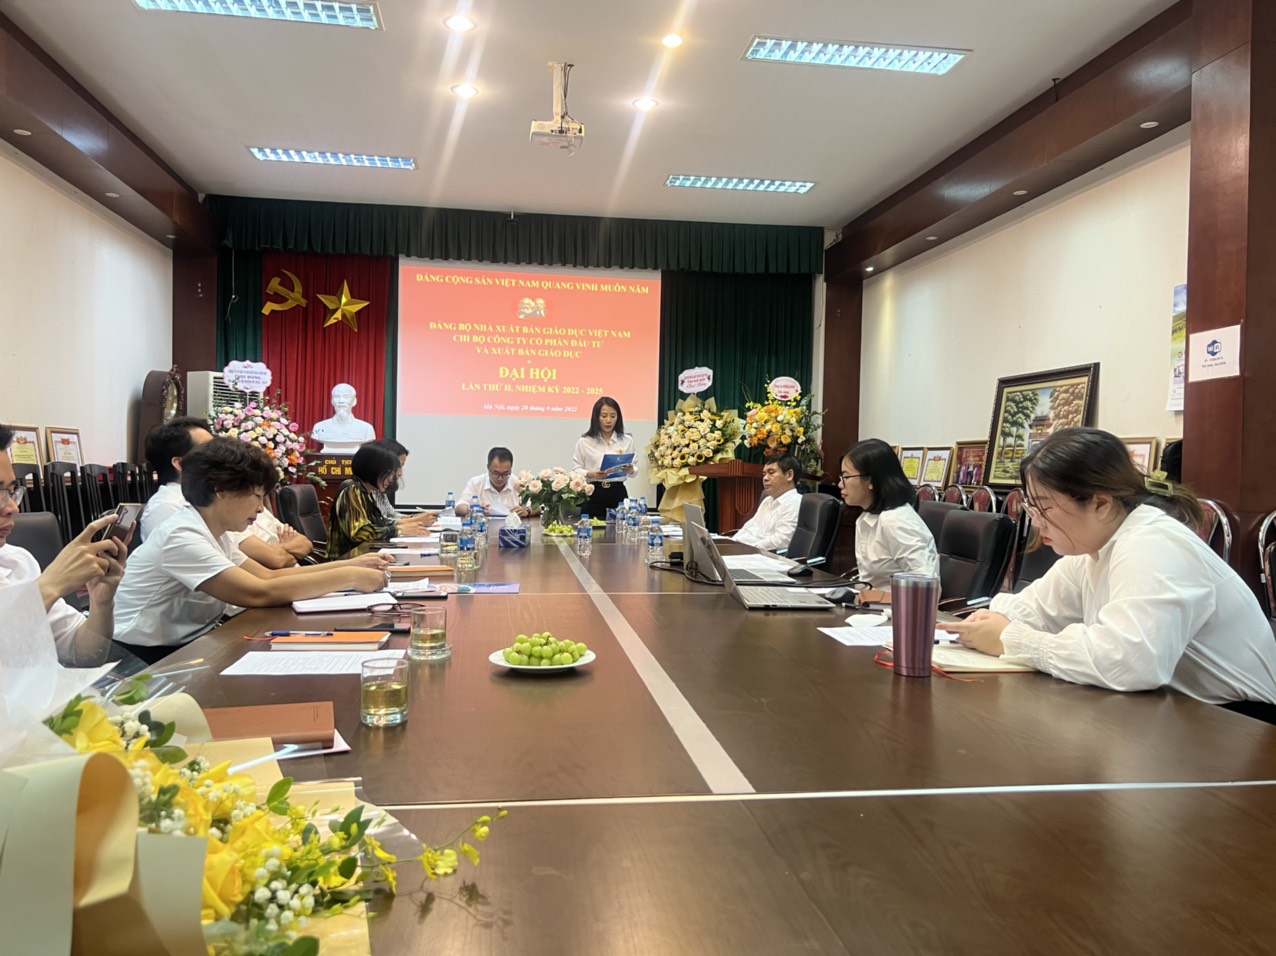 Đồng chí Bùi Thị Thanh Huyền  - Bí thư Chi bộ trình bày Báo cáo tại Đại hội.